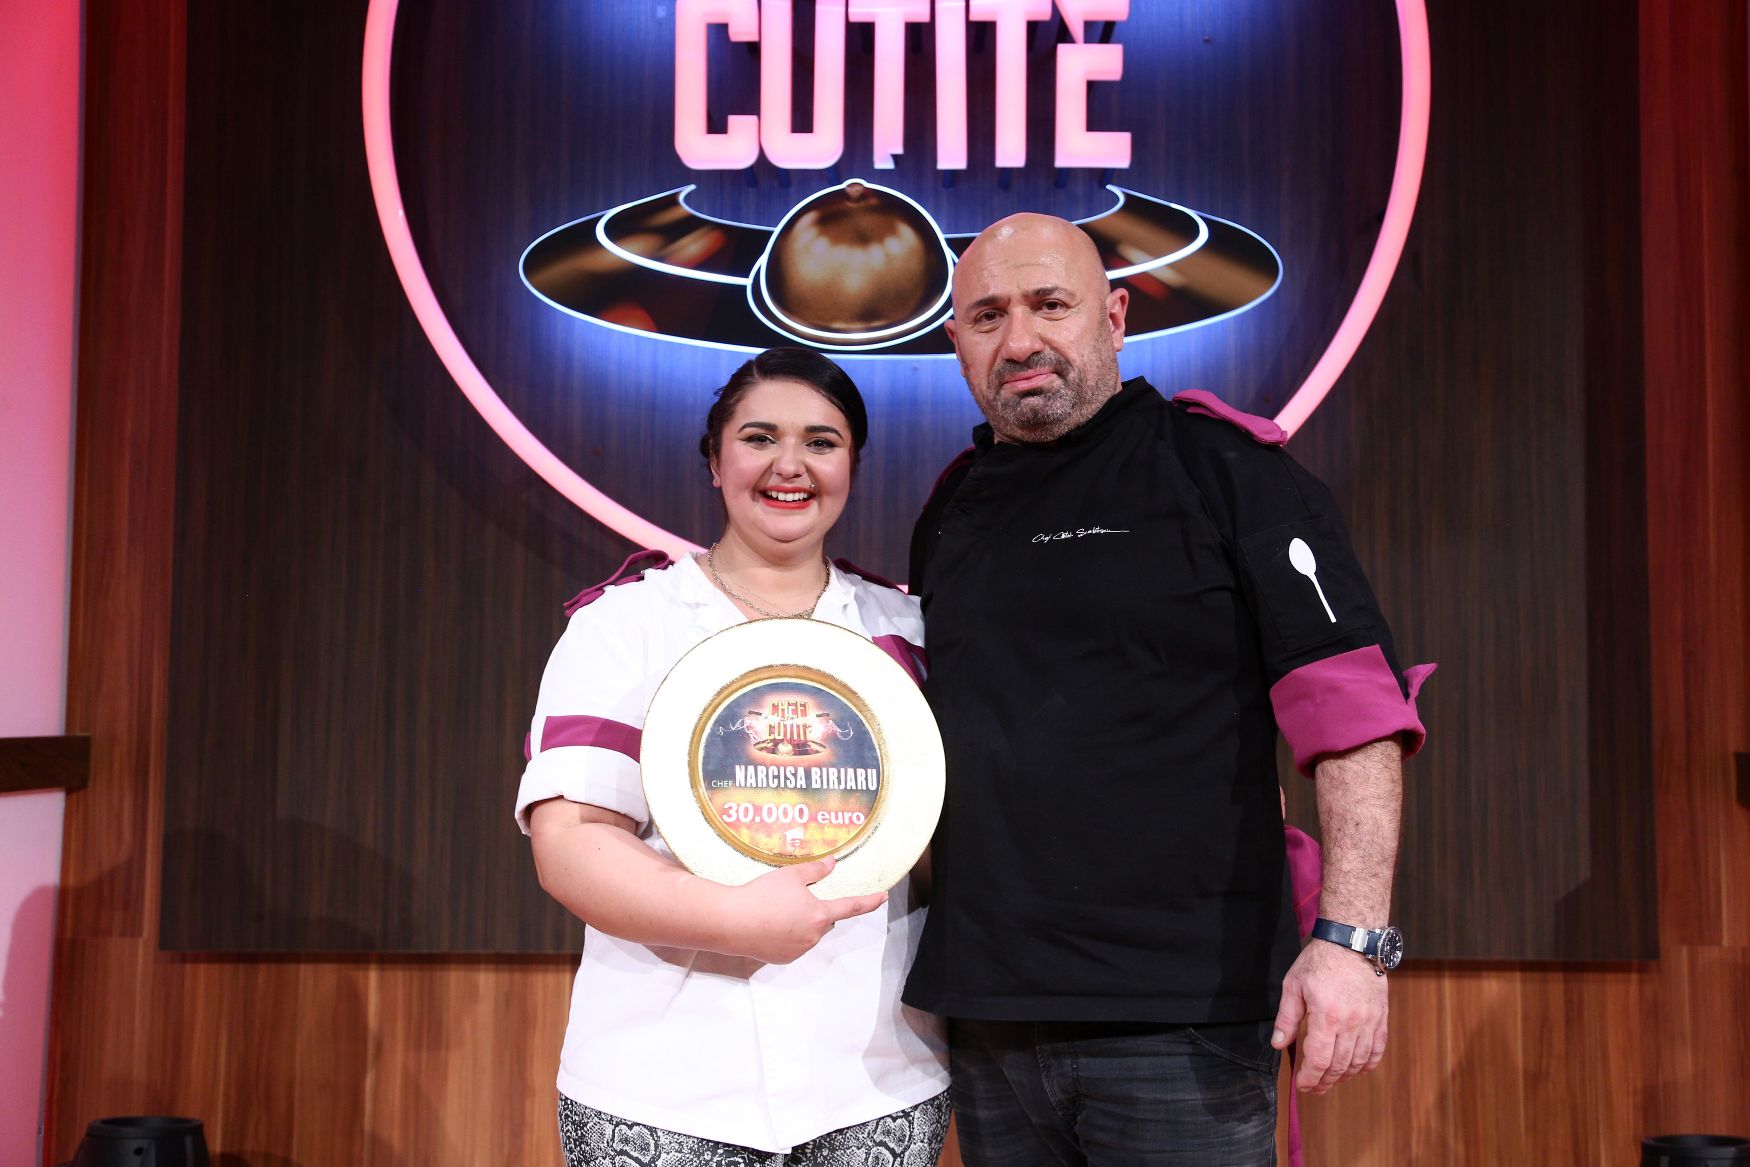 Aseară, când show-ul a fost lider de audiență, Narcisa Birjaru din echipa lui chef Scărlătescu, prima femeie câștigătoare la Chefi la cuțite